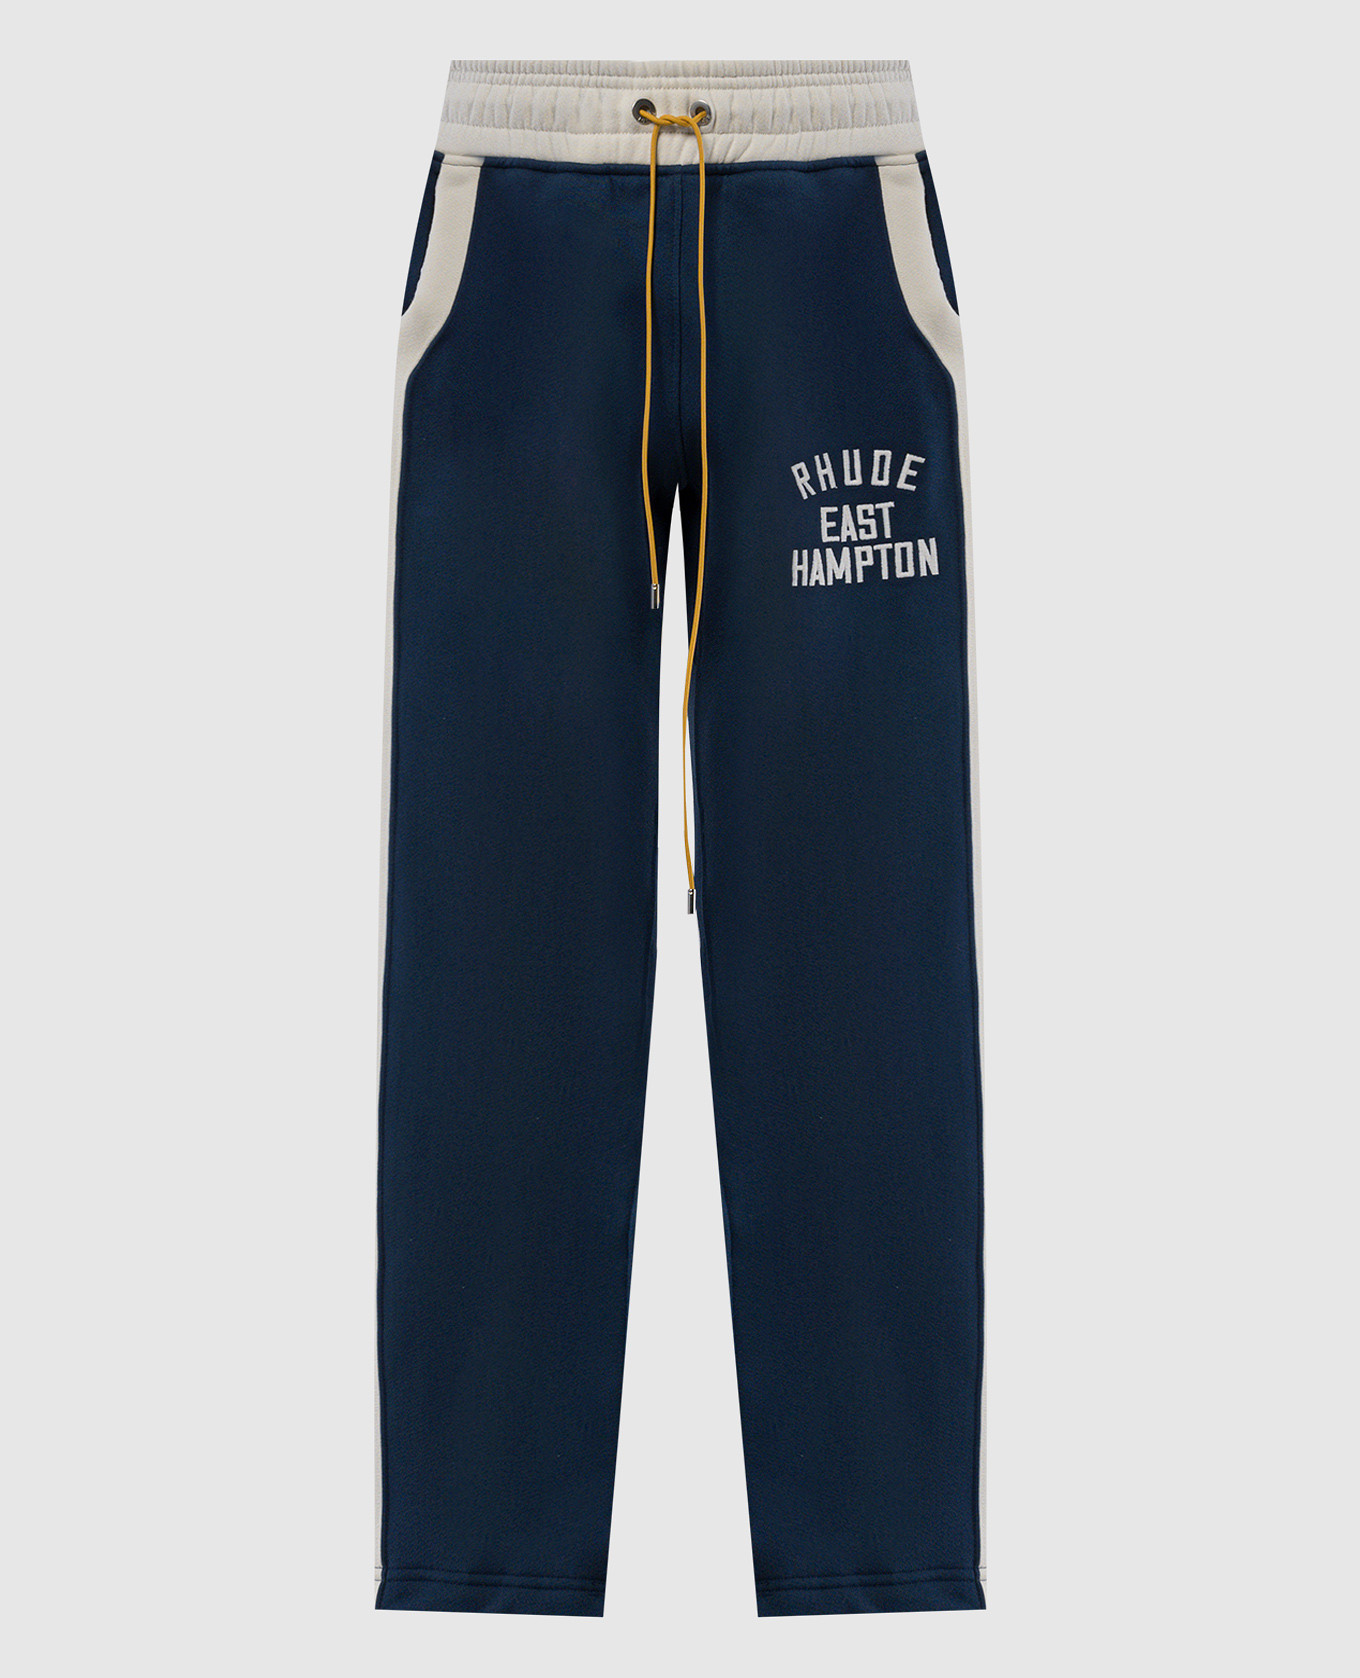 Синие спортивные штаны East Hampton с вышивкой логотипа